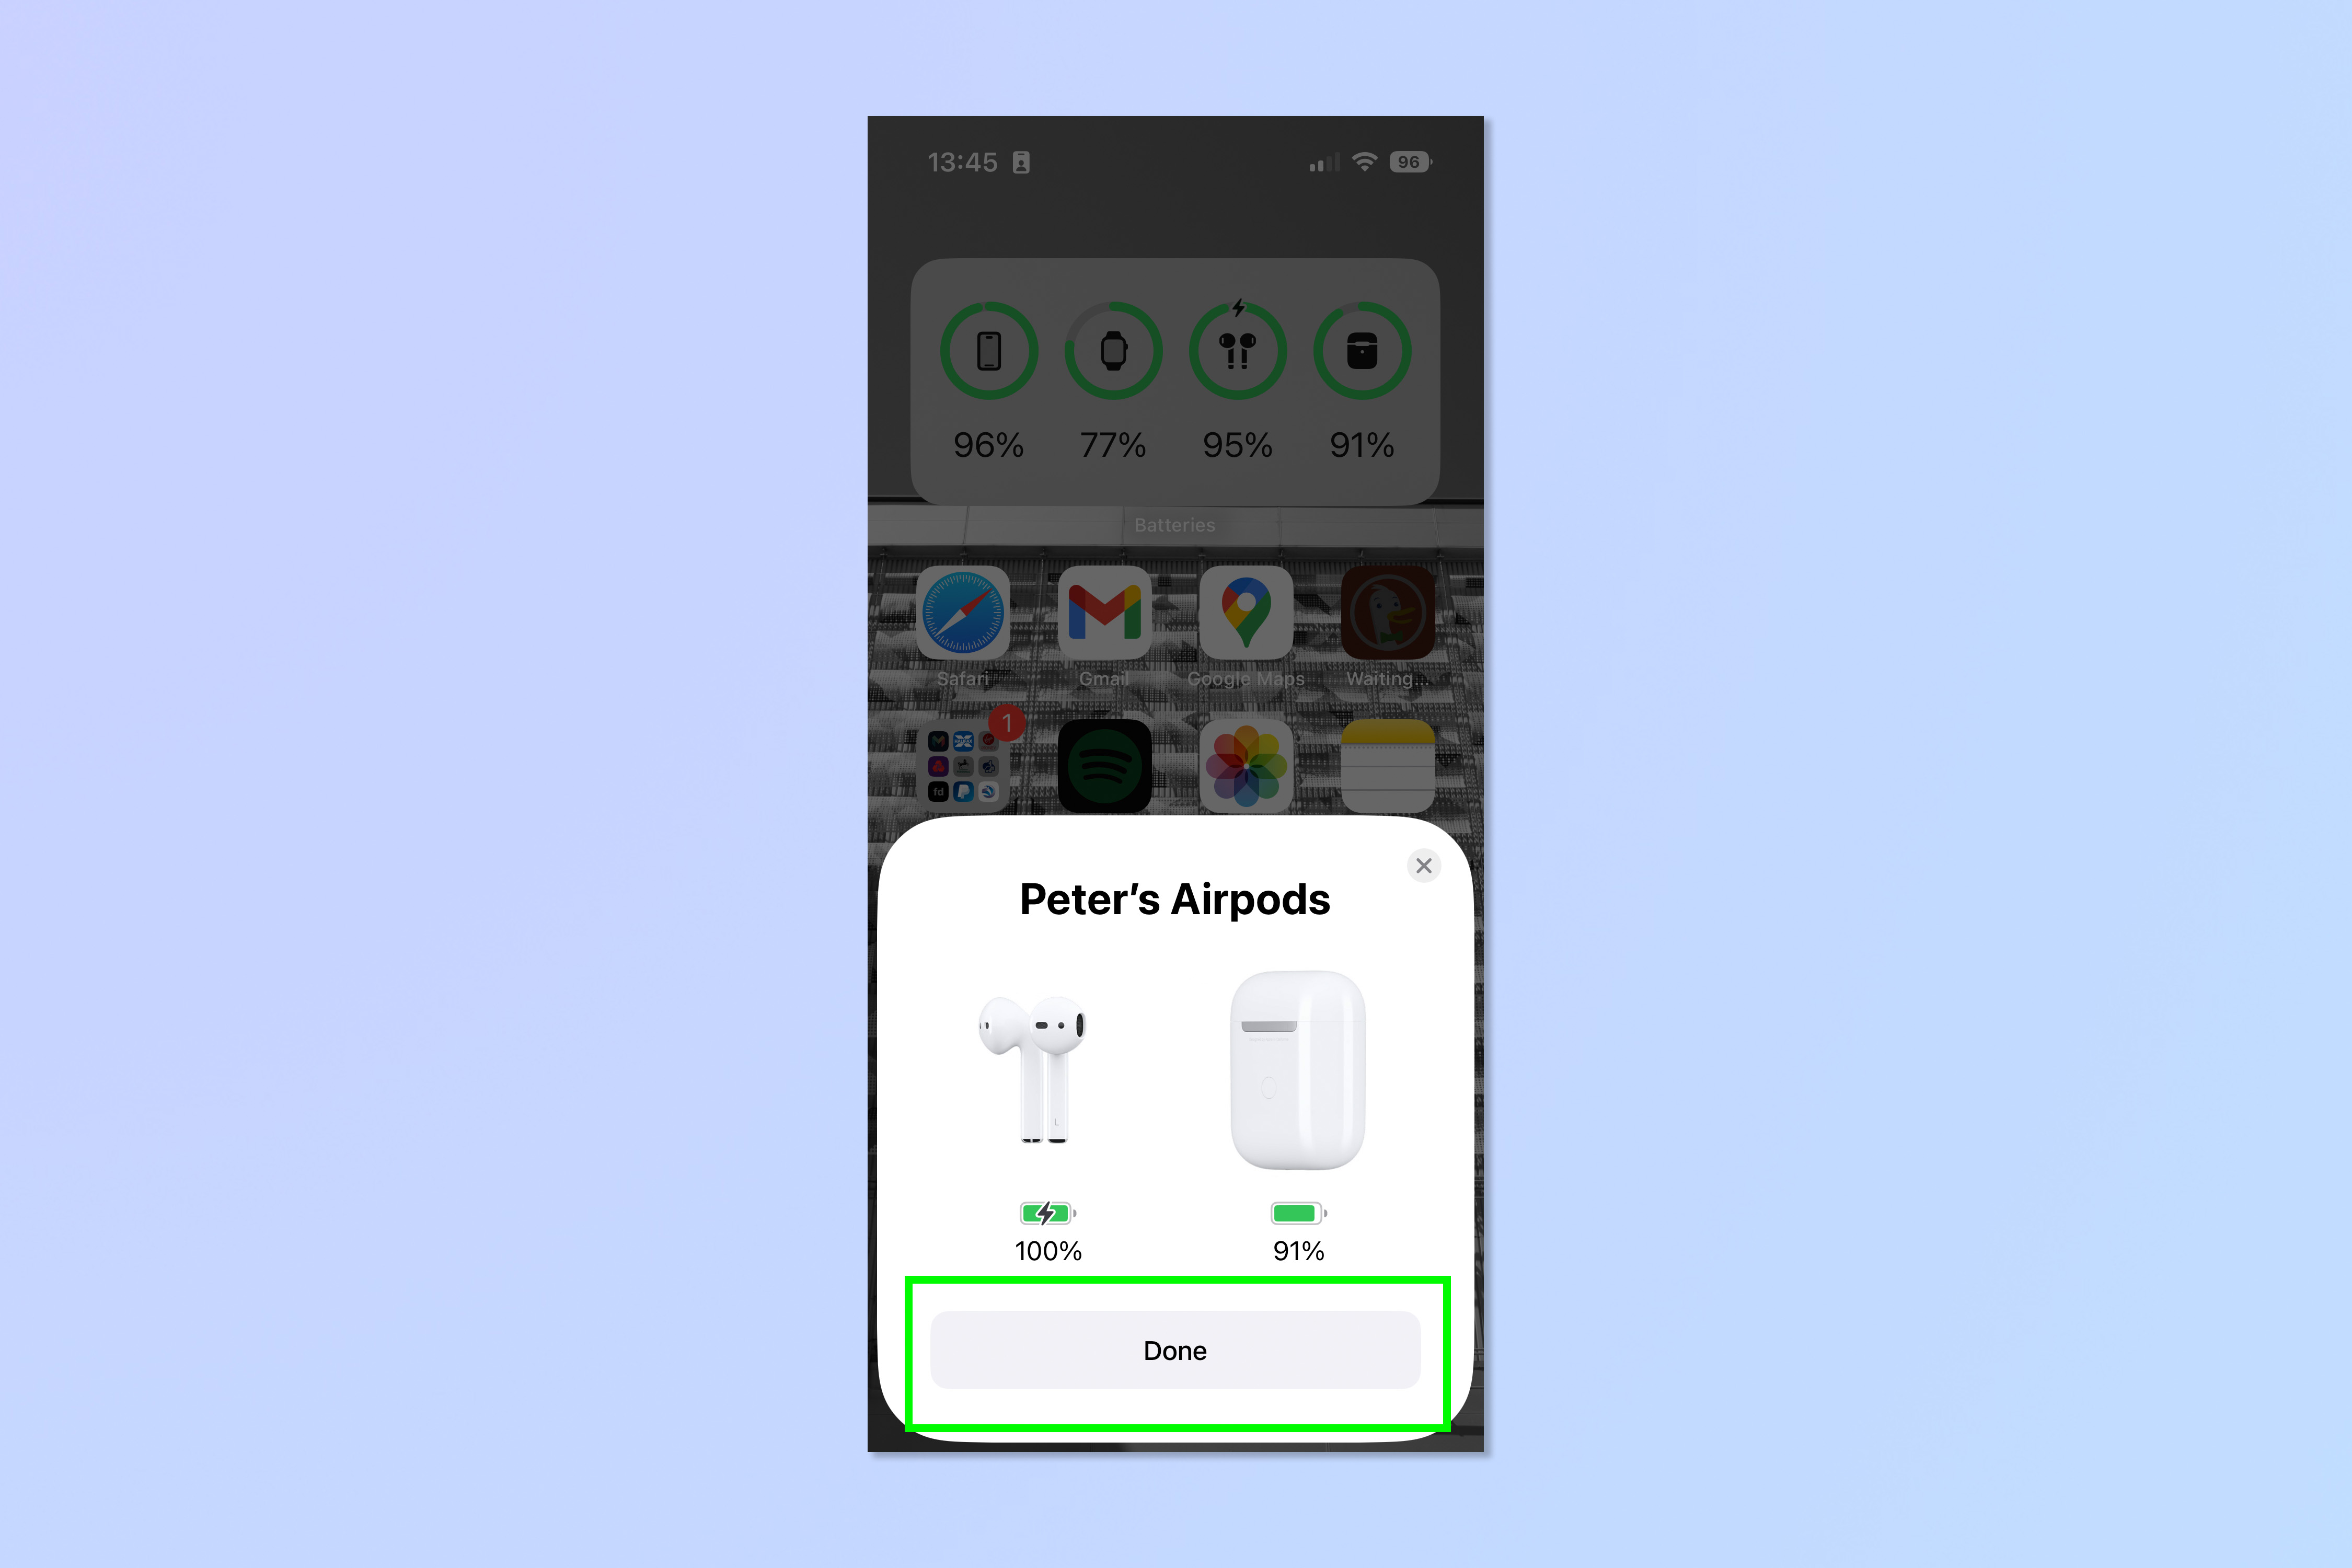 Снимок экрана, показывающий шаги, необходимые для подключения AirPods к iPhone или iPad.